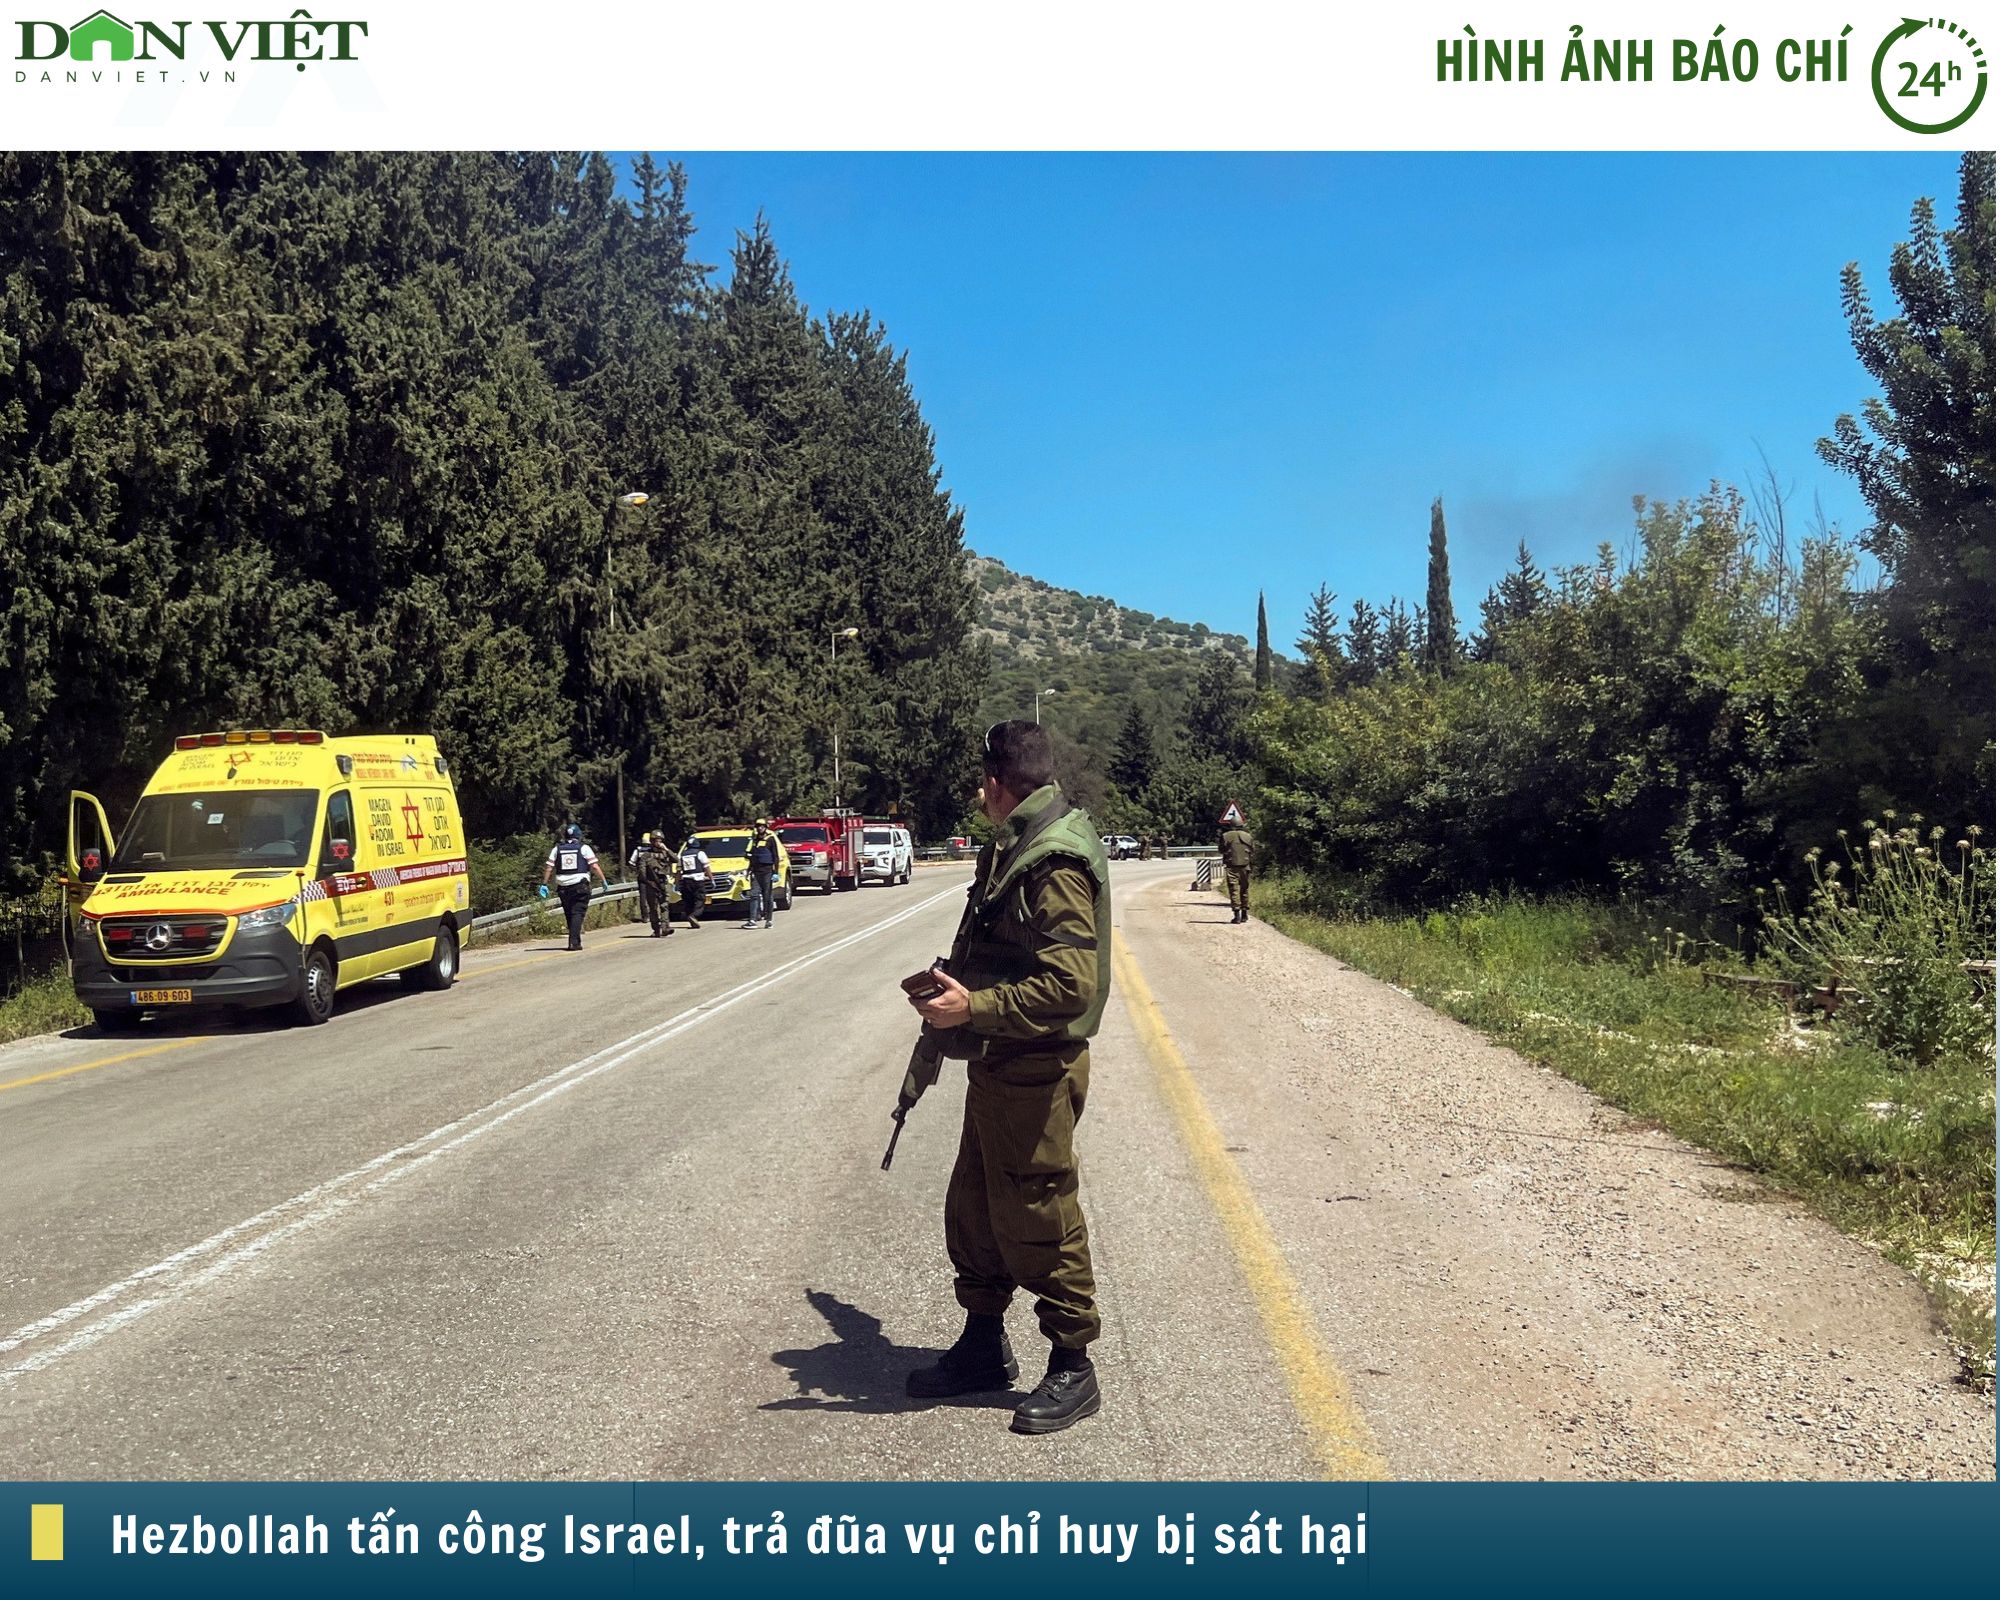 Hình ảnh báo chí 24h: Hezbollah tấn công Israel, nhiều binh sĩ bị thương- Ảnh 1.